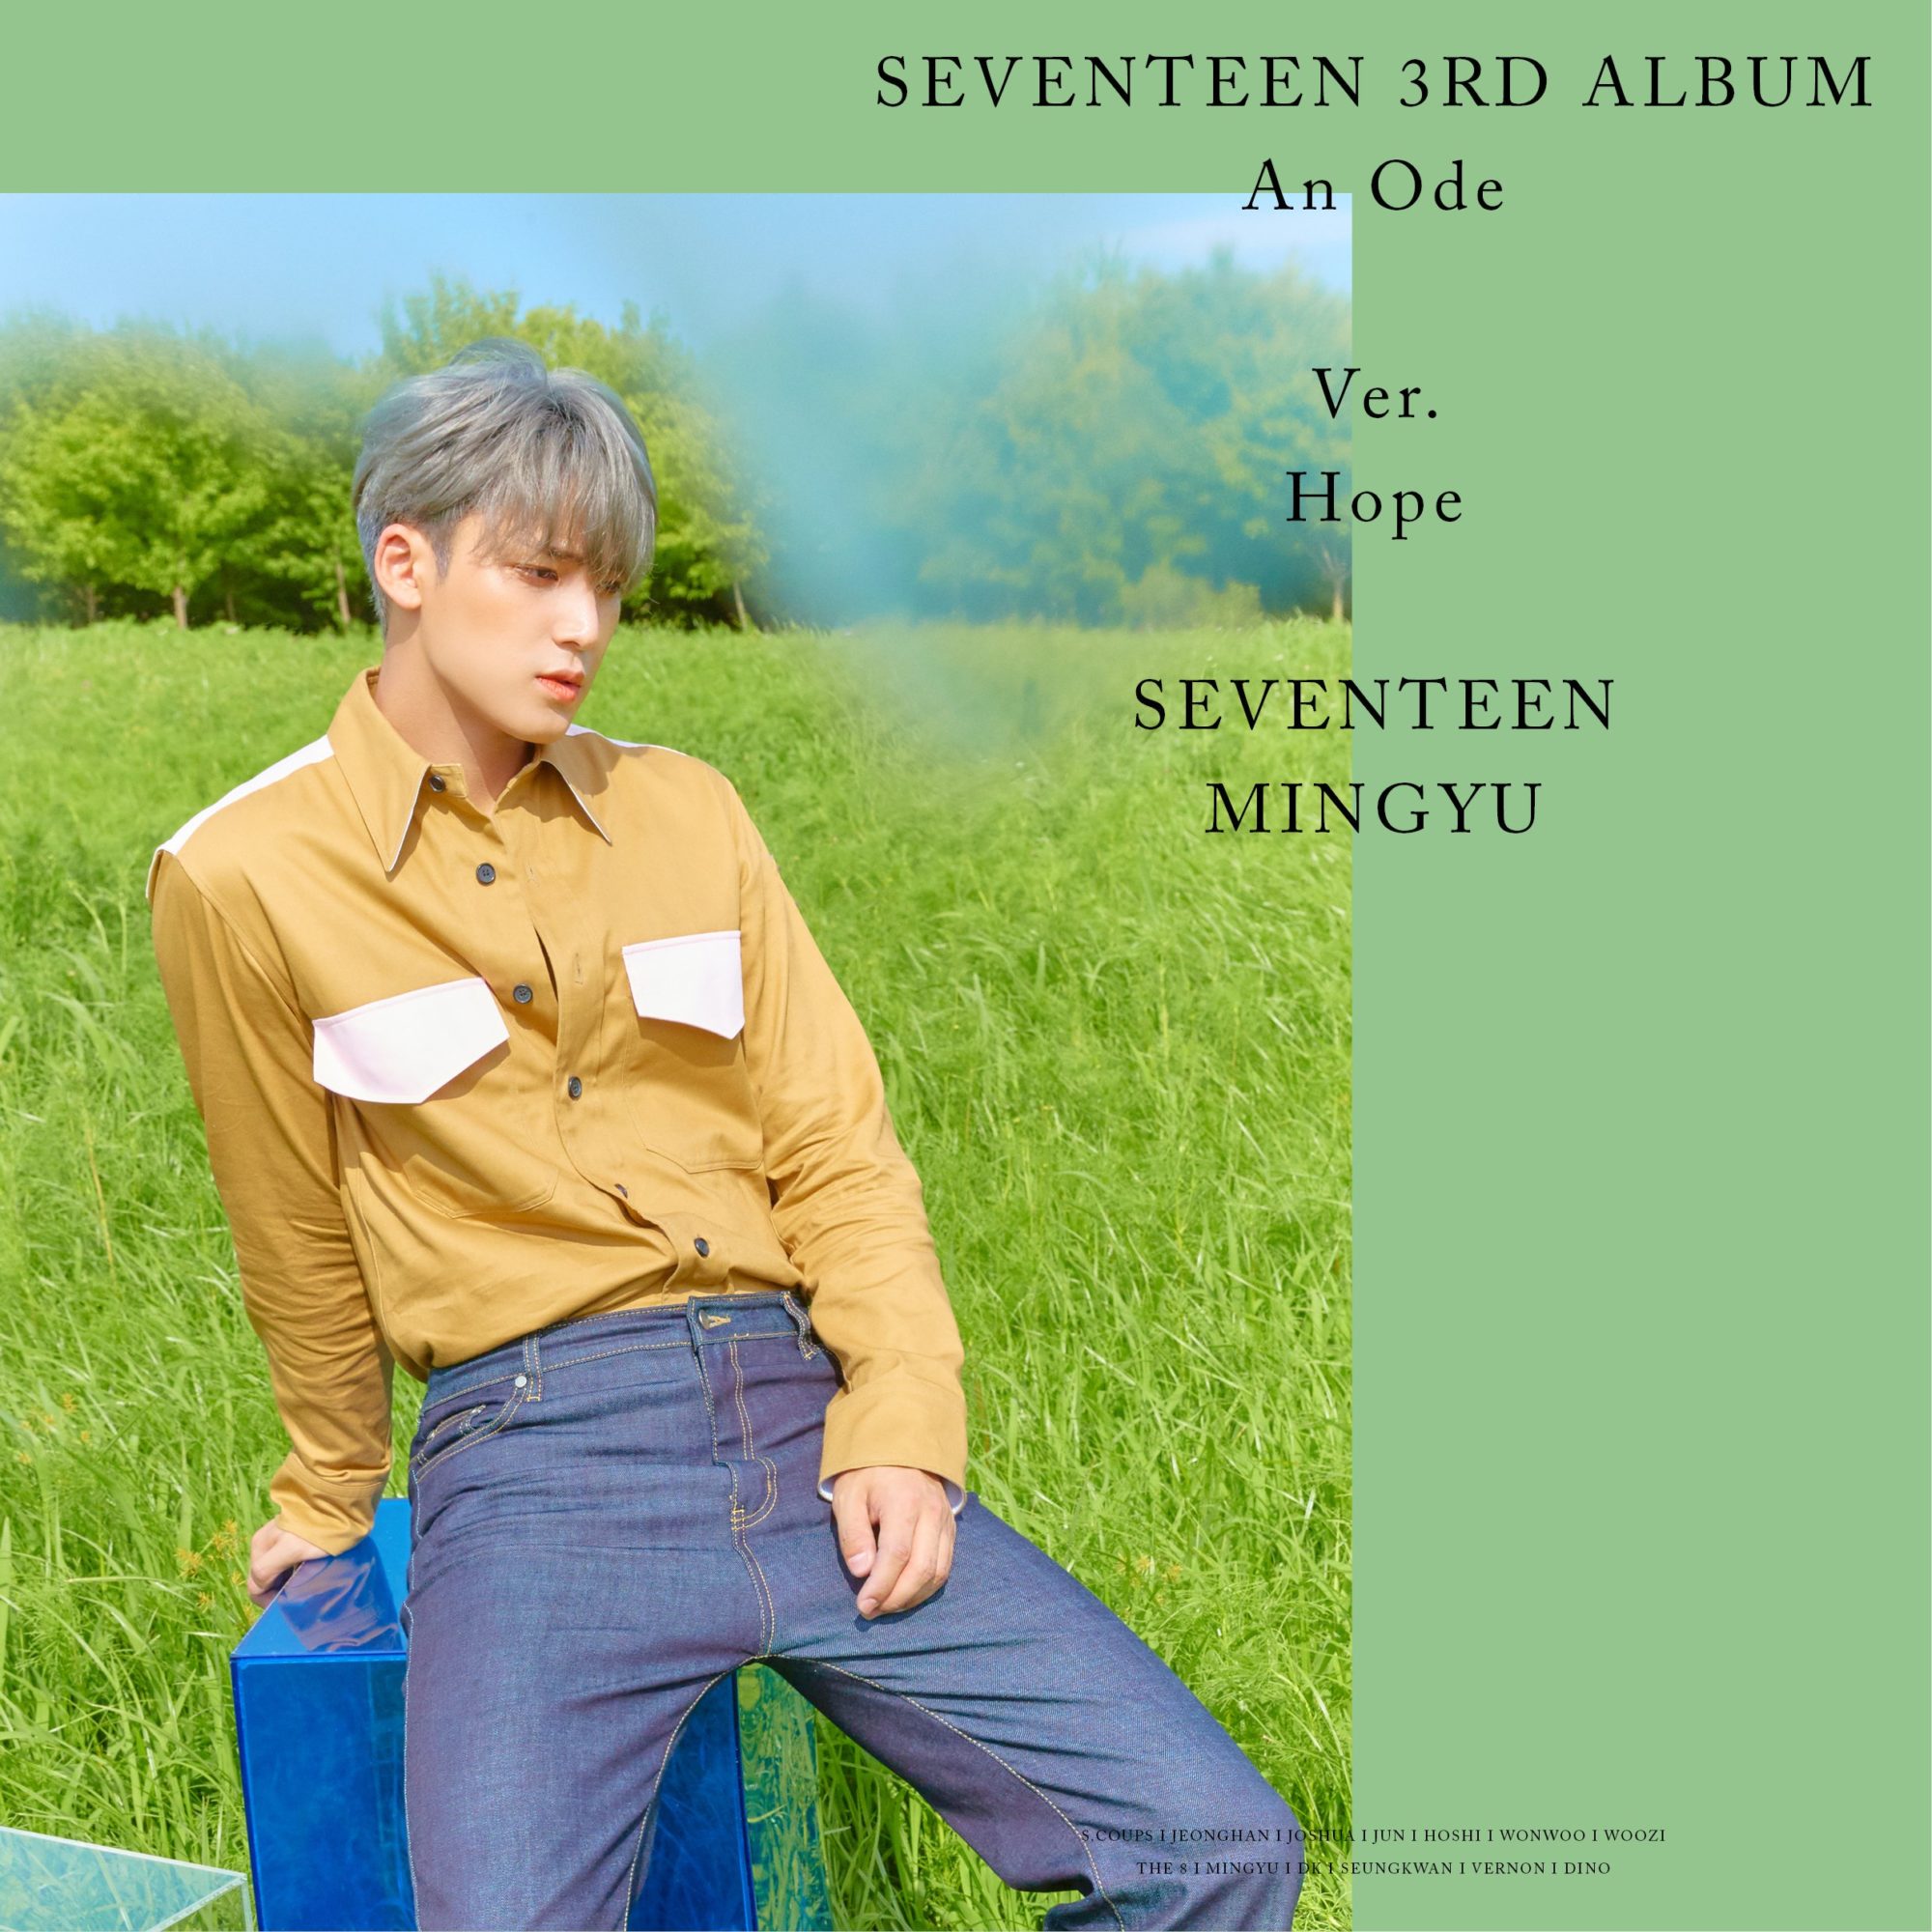 Seventeen An Ode Hope Ver. Mingyu